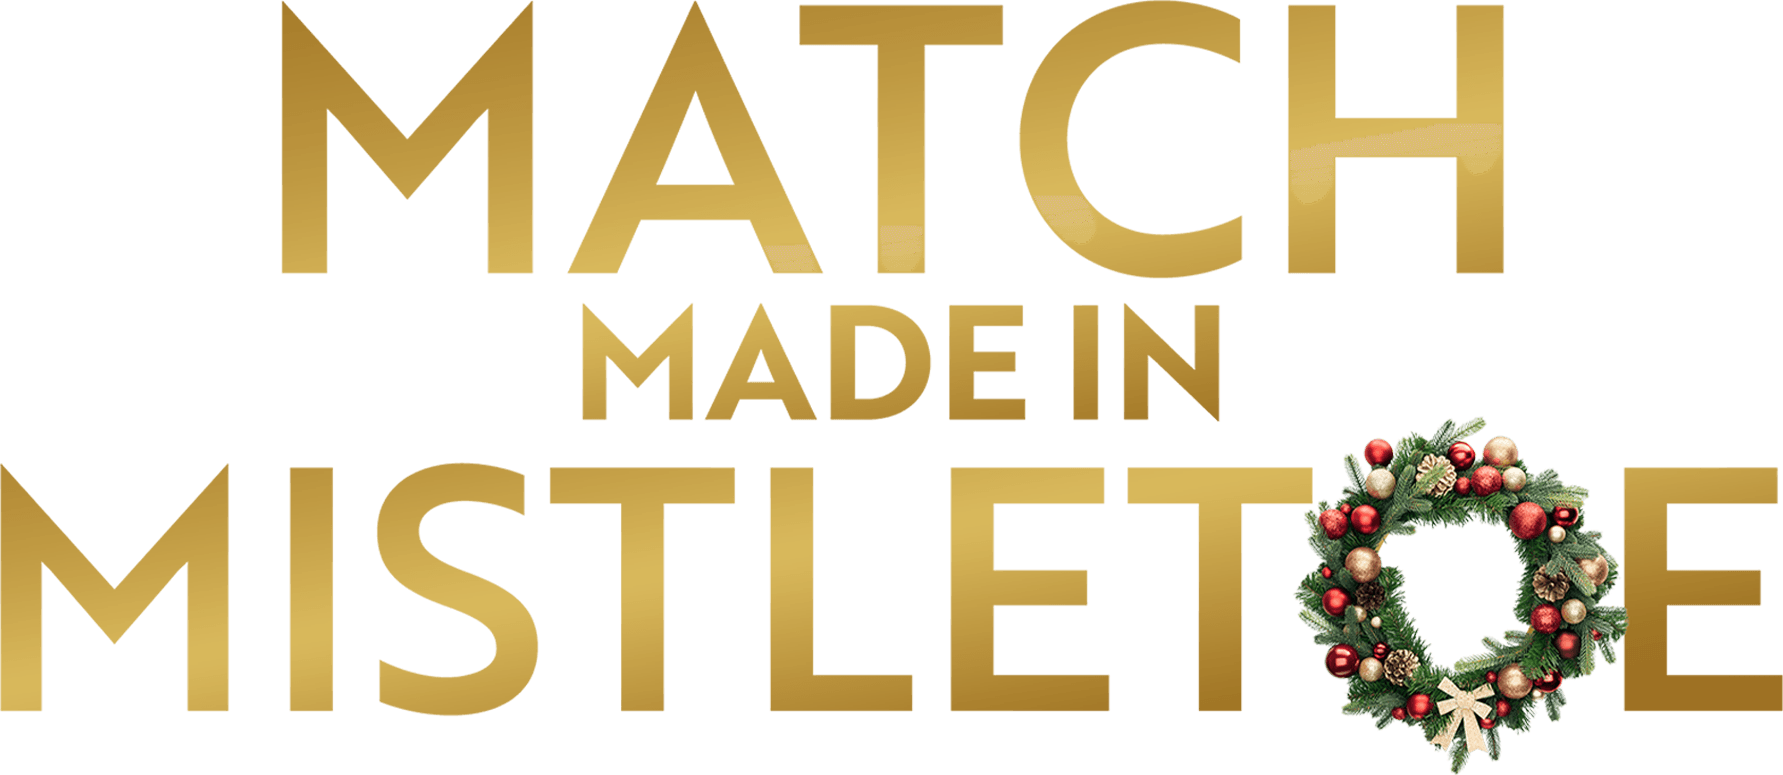 Match Made in Mistletoe logo